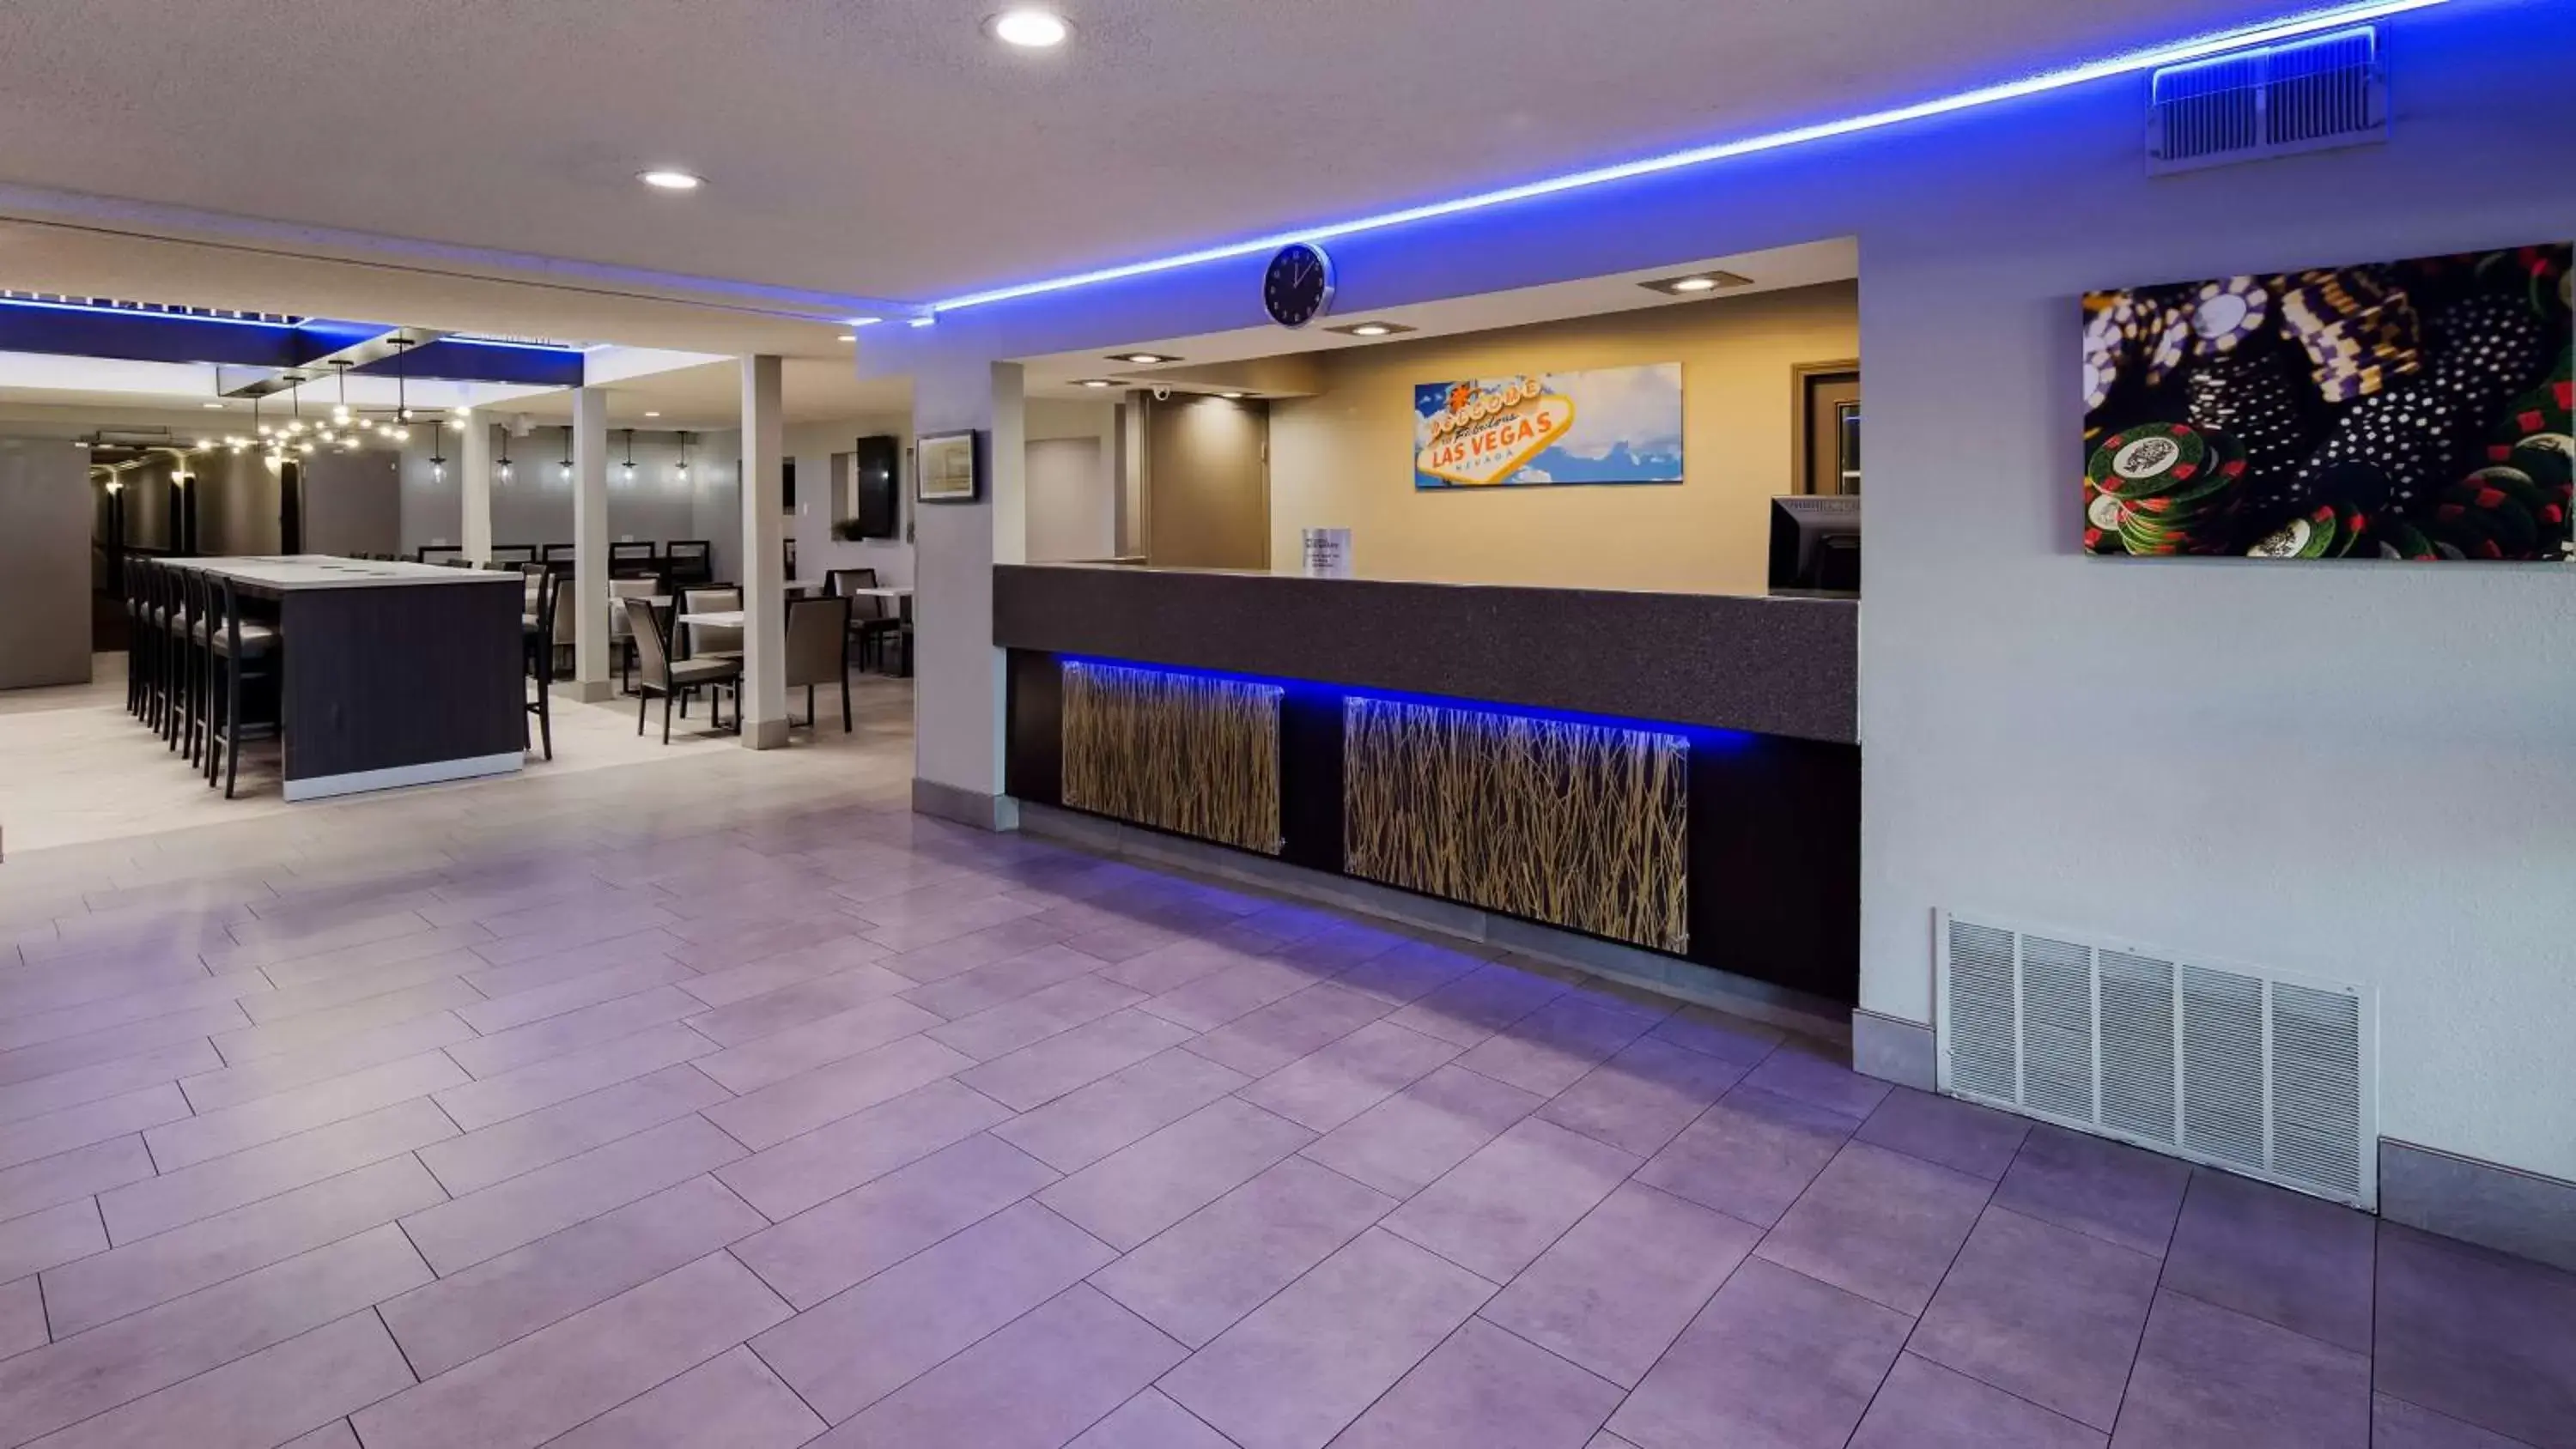 Lobby or reception, Lobby/Reception in Best Western McCarran Inn